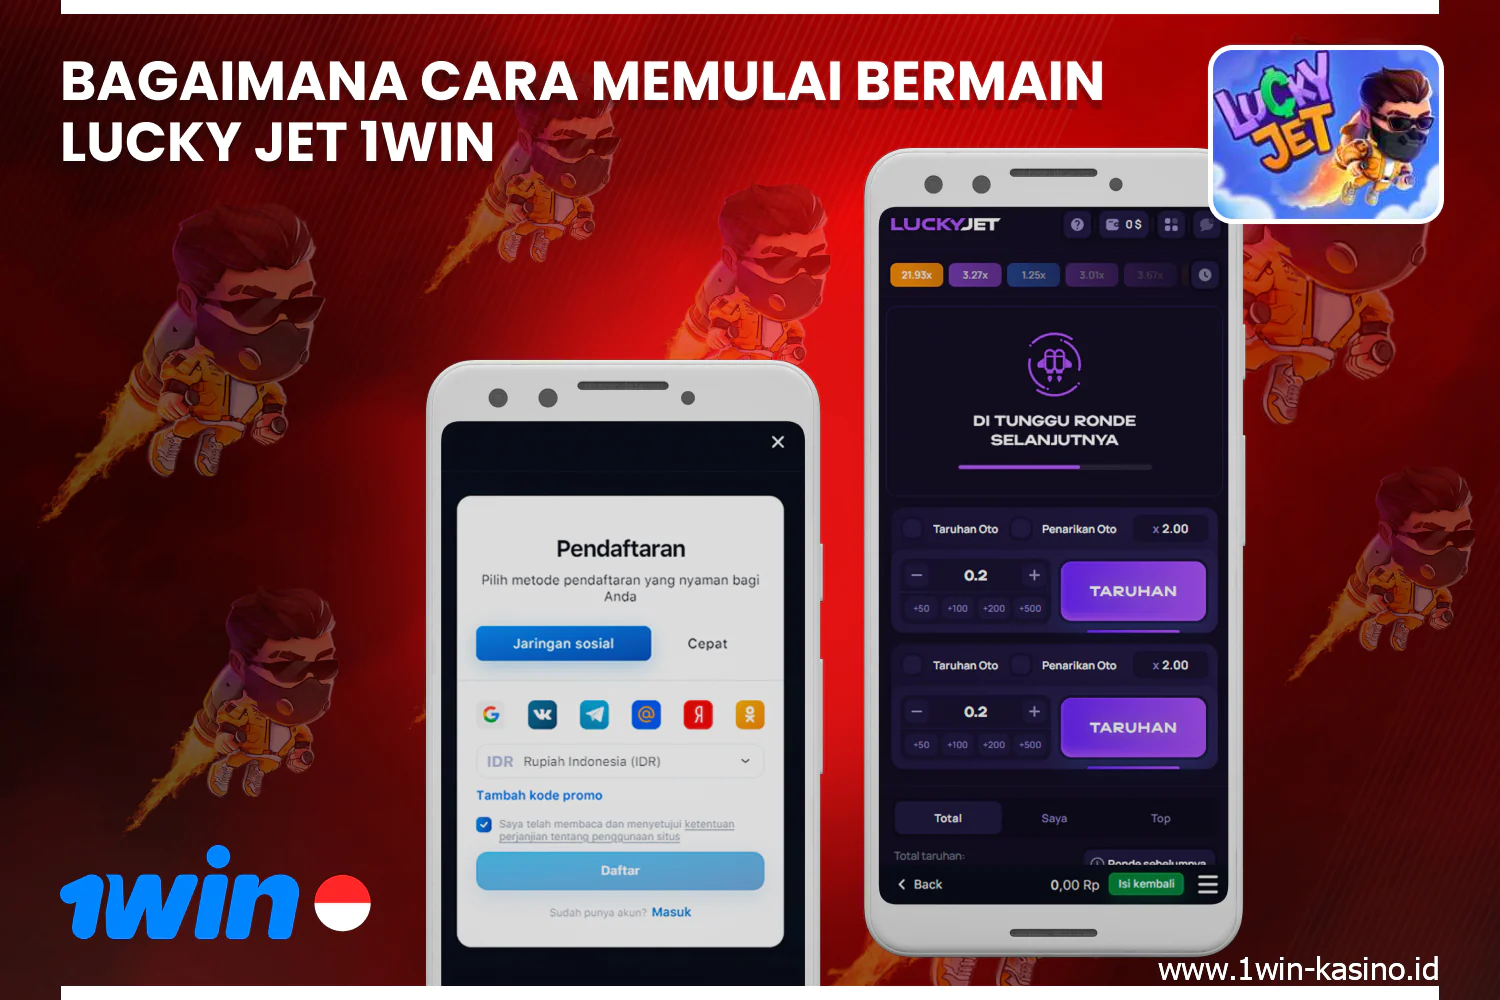 Untuk mulai bermain 1win Lucky Jet, pemain Indonesia harus mendaftar di situs web atau aplikasi dan masuk ke akun mereka